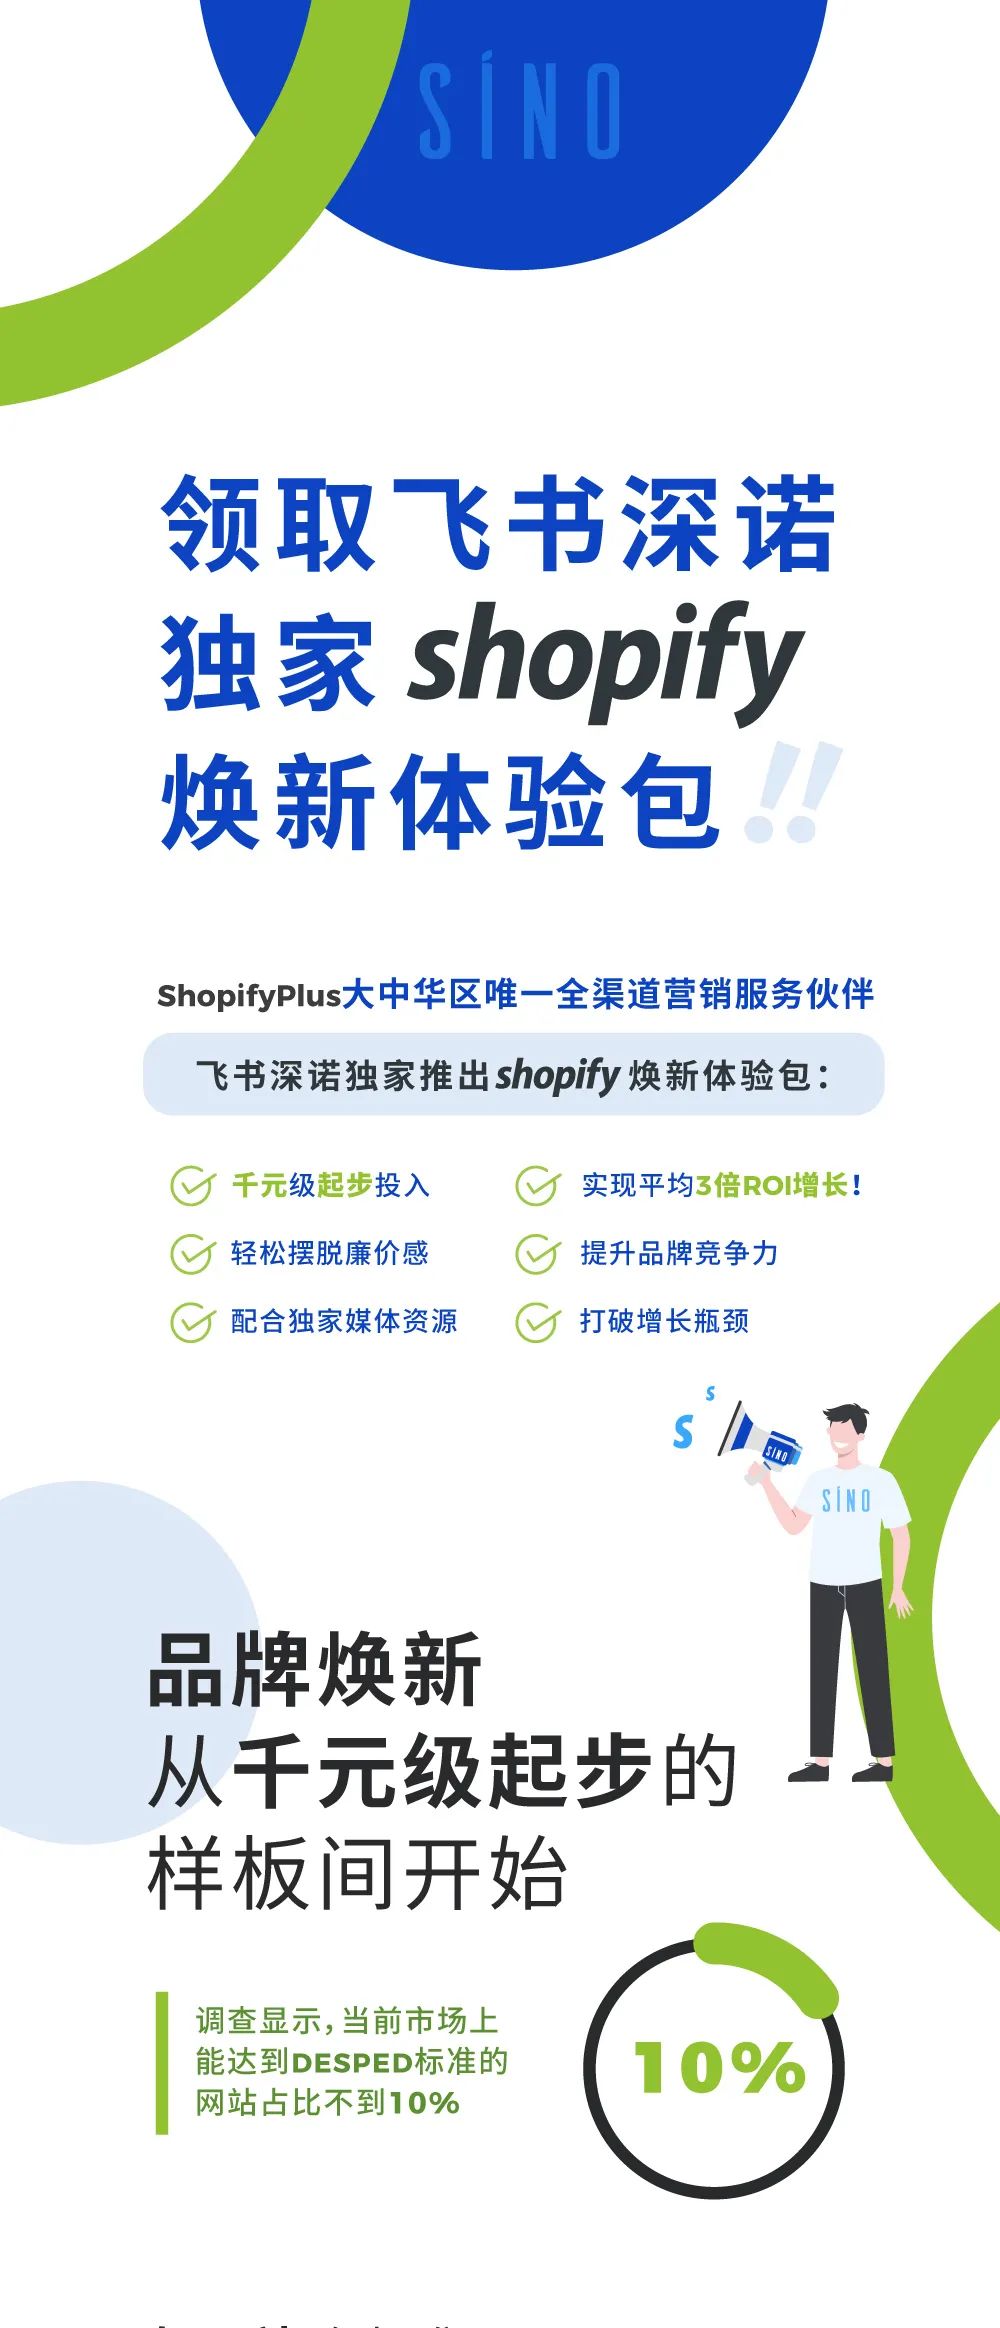 Shopify多款体验包套餐为跨境电商提供建设独立站和广告营销服务